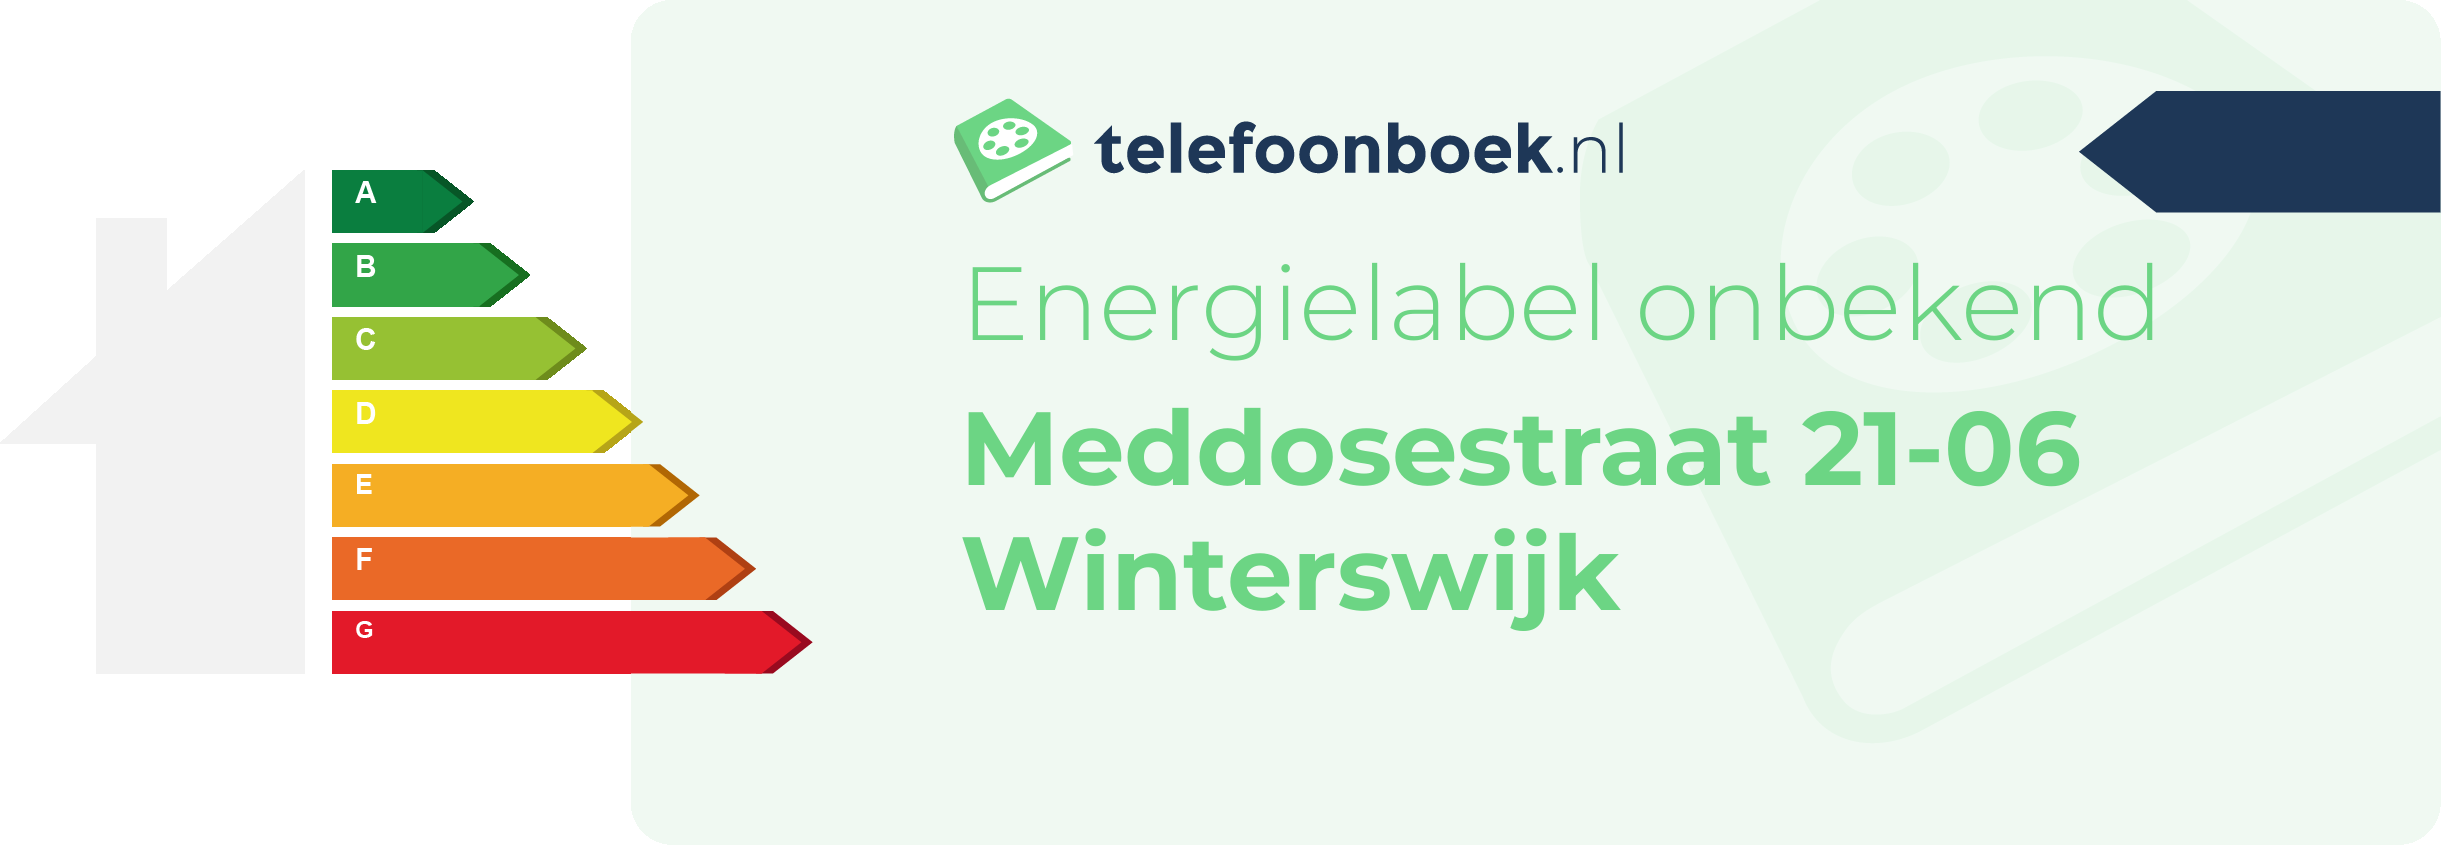 Energielabel Meddosestraat 21-06 Winterswijk